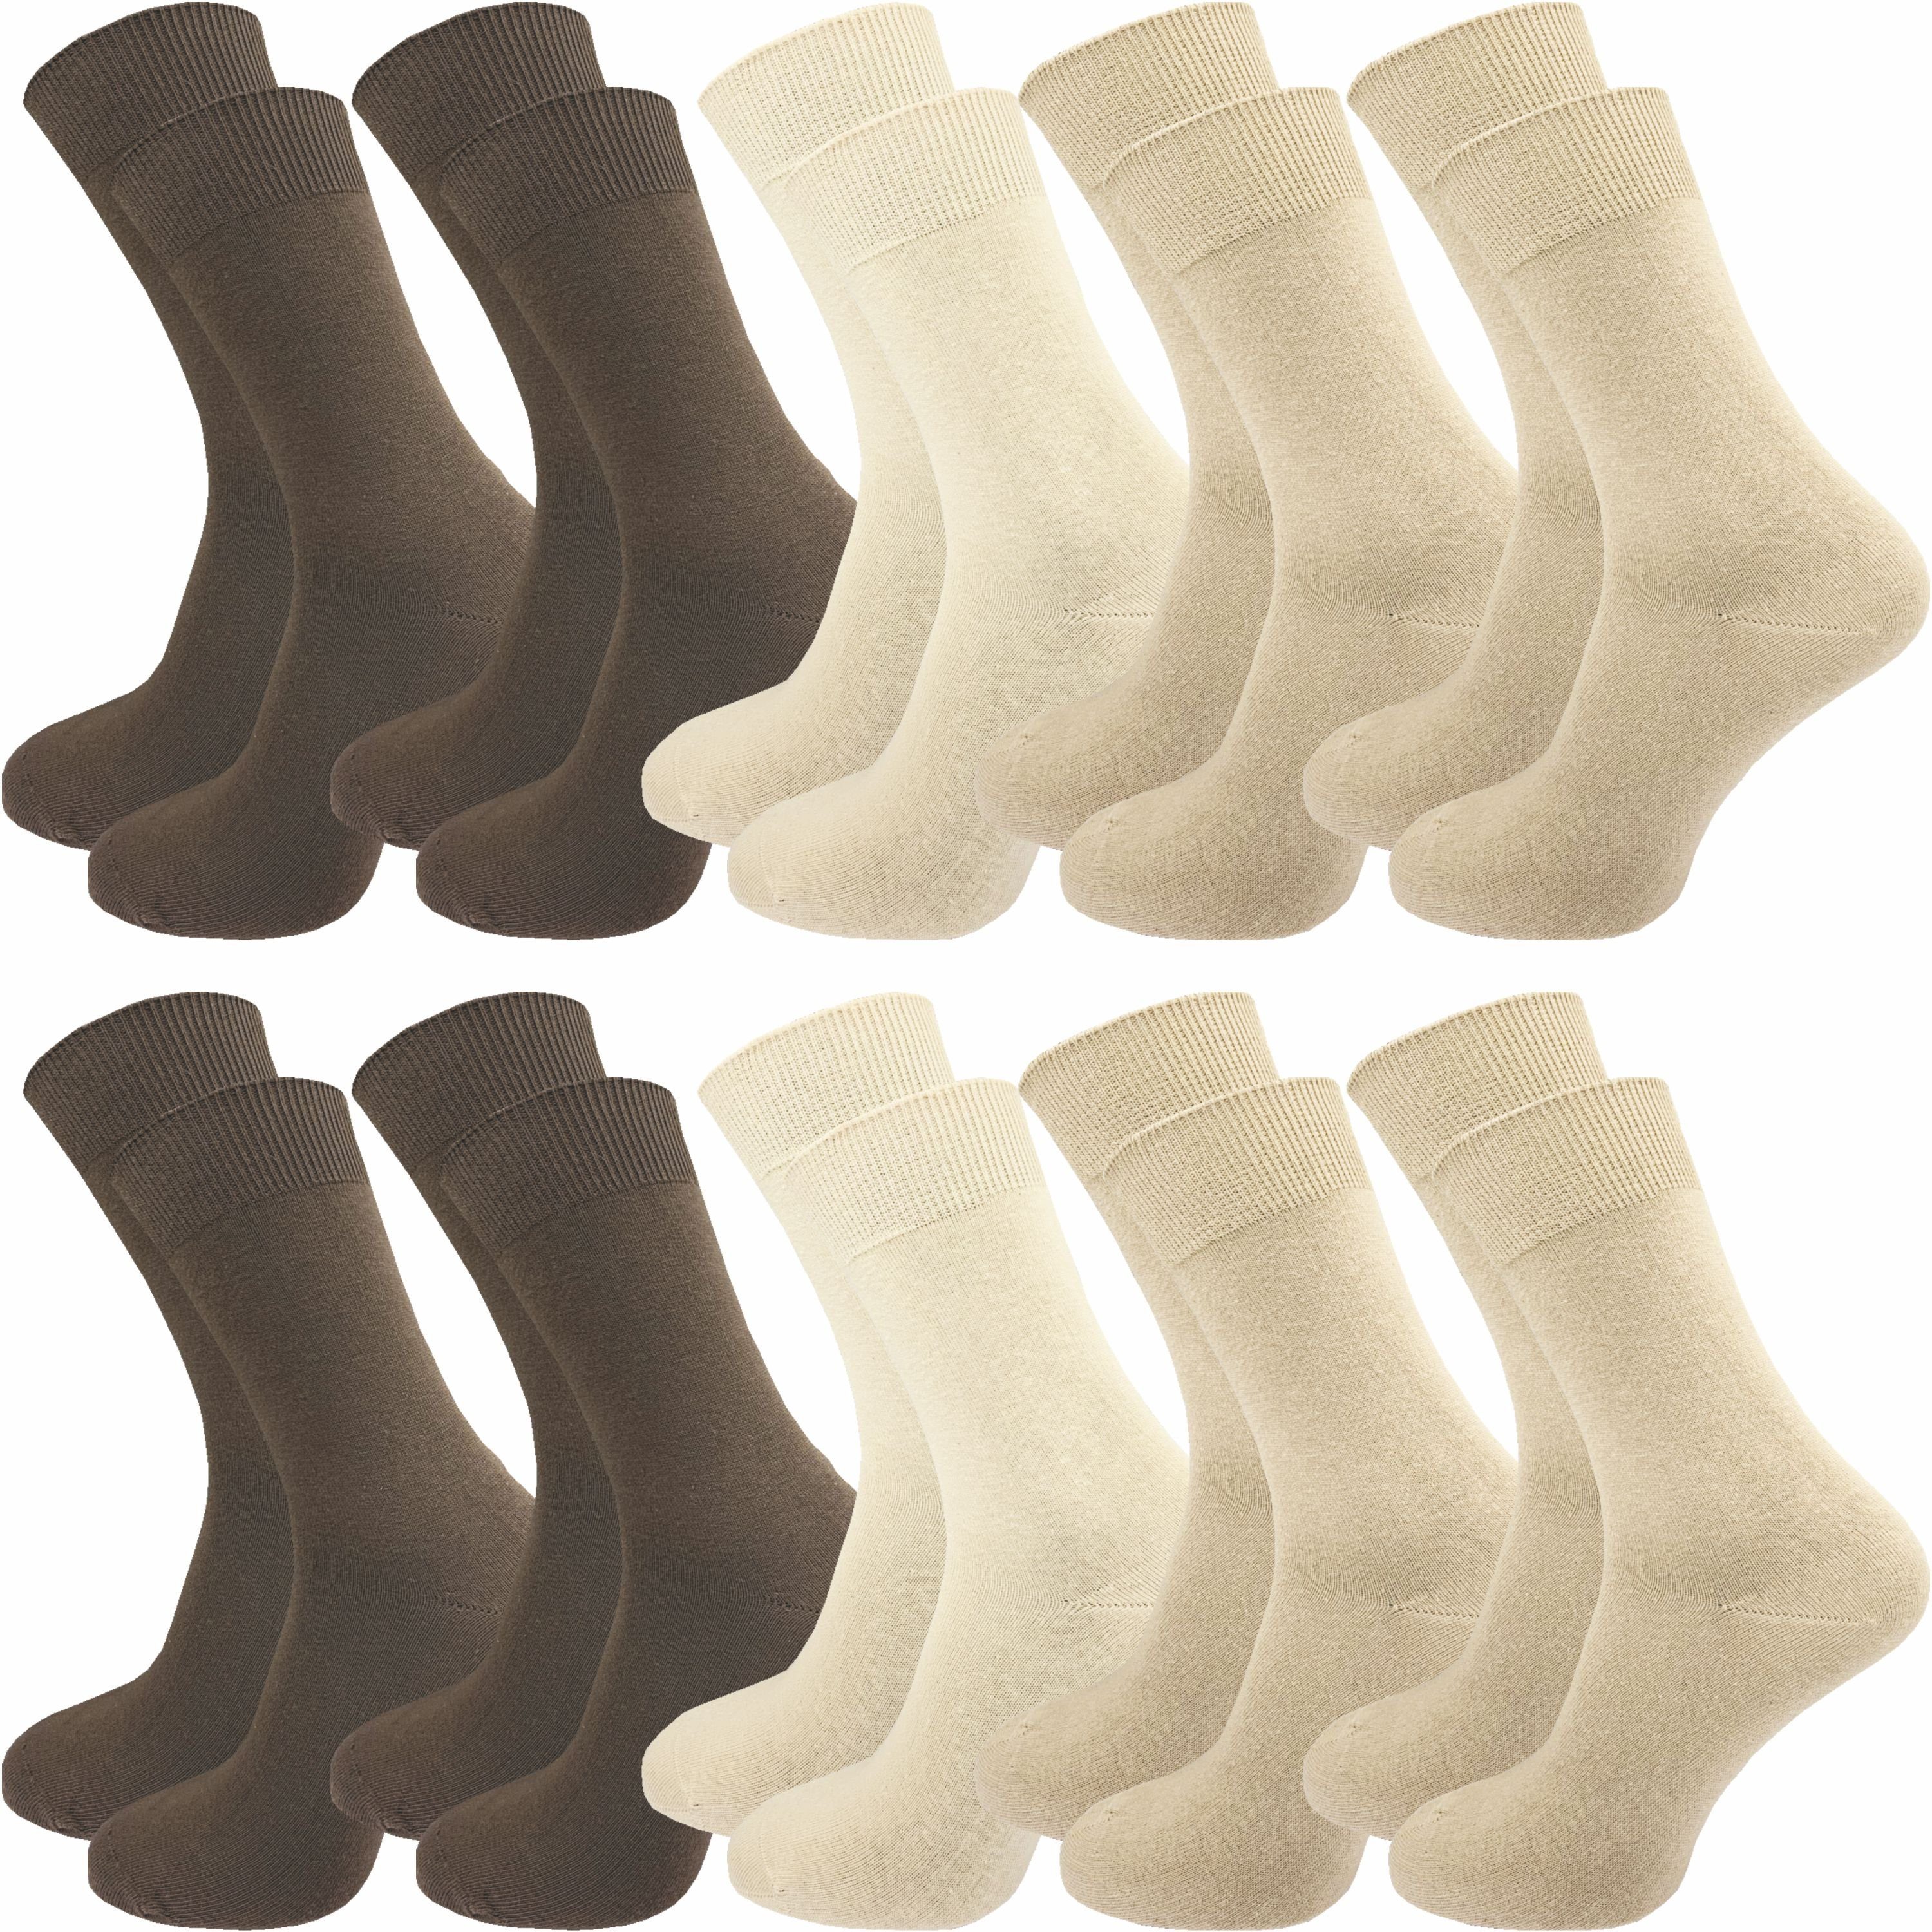 GAWILO Шкарпетки für Damen und Herren aus 100% Baumwolle, Business und Freizeit (10 Paar) mit venenfreundlichem Komfortbund